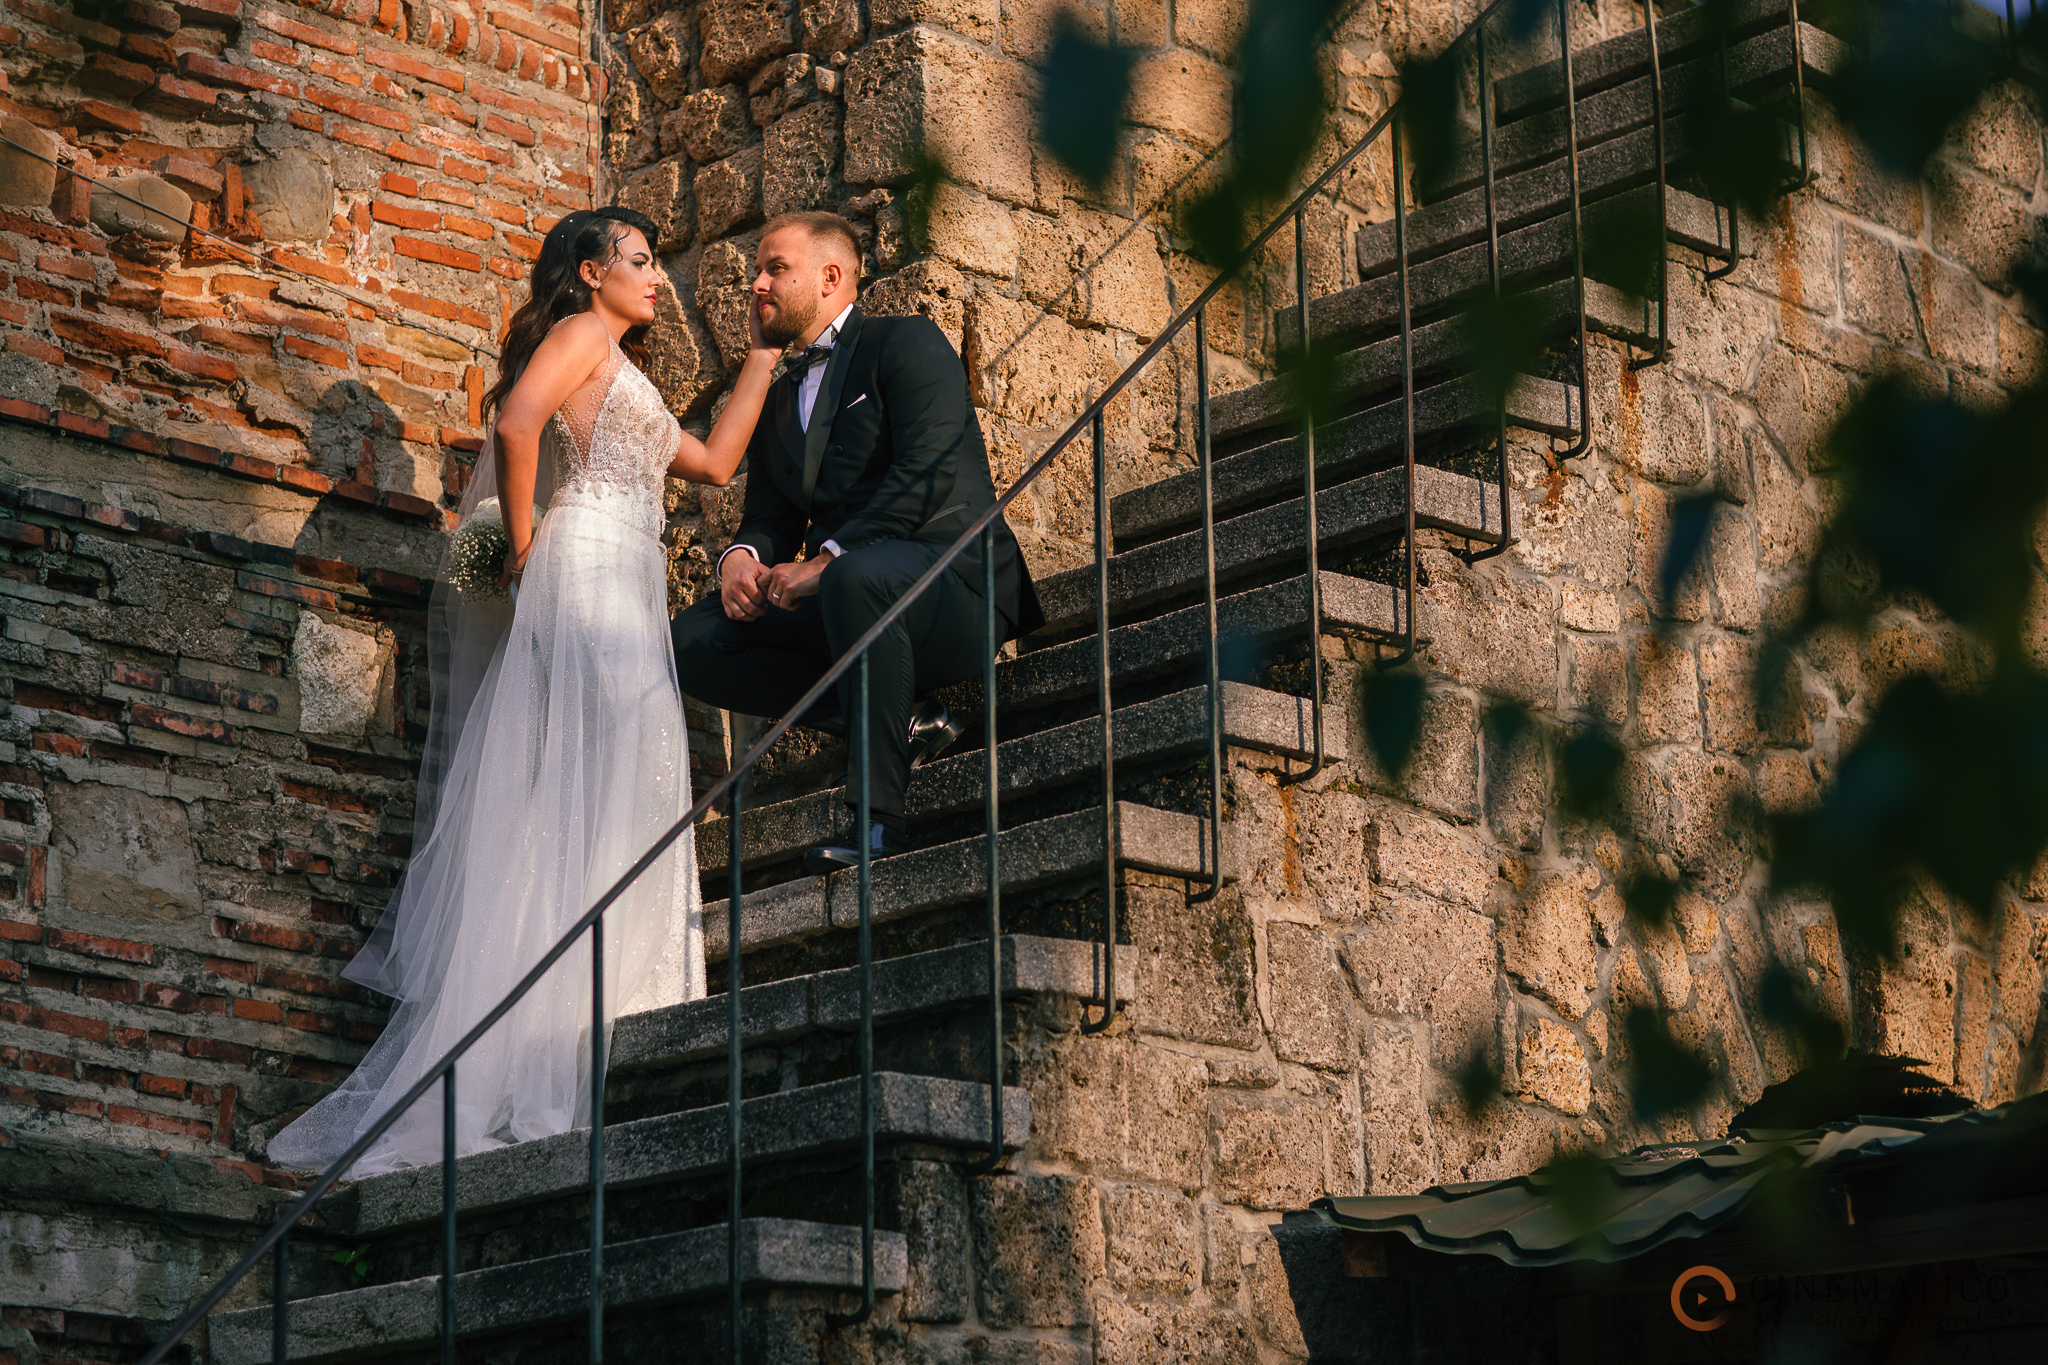 Cauti un fotograf profesionist pentru nunta ta